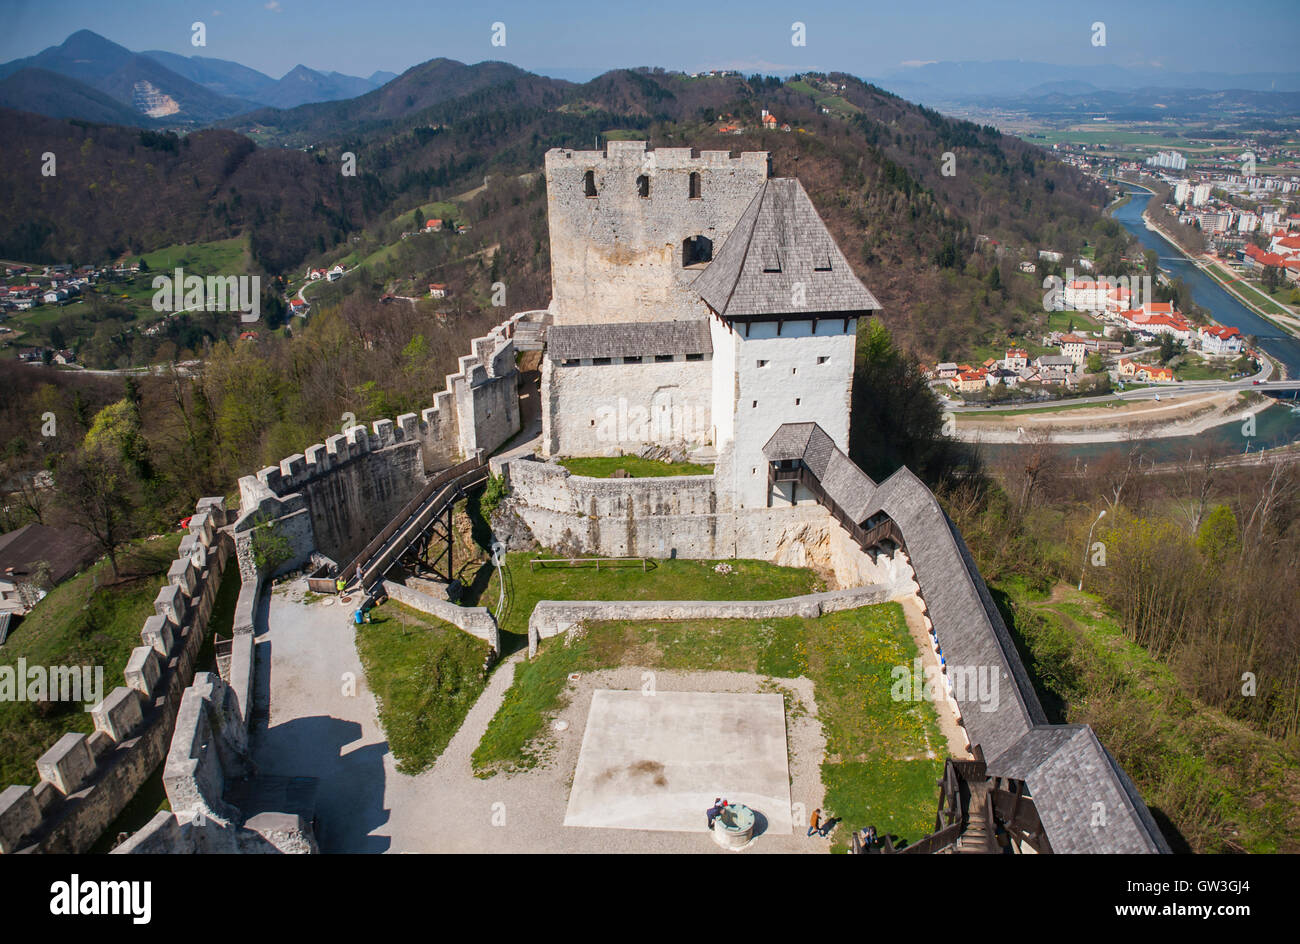 Celje castle, tourist attraction, Slovenia Stock Photo